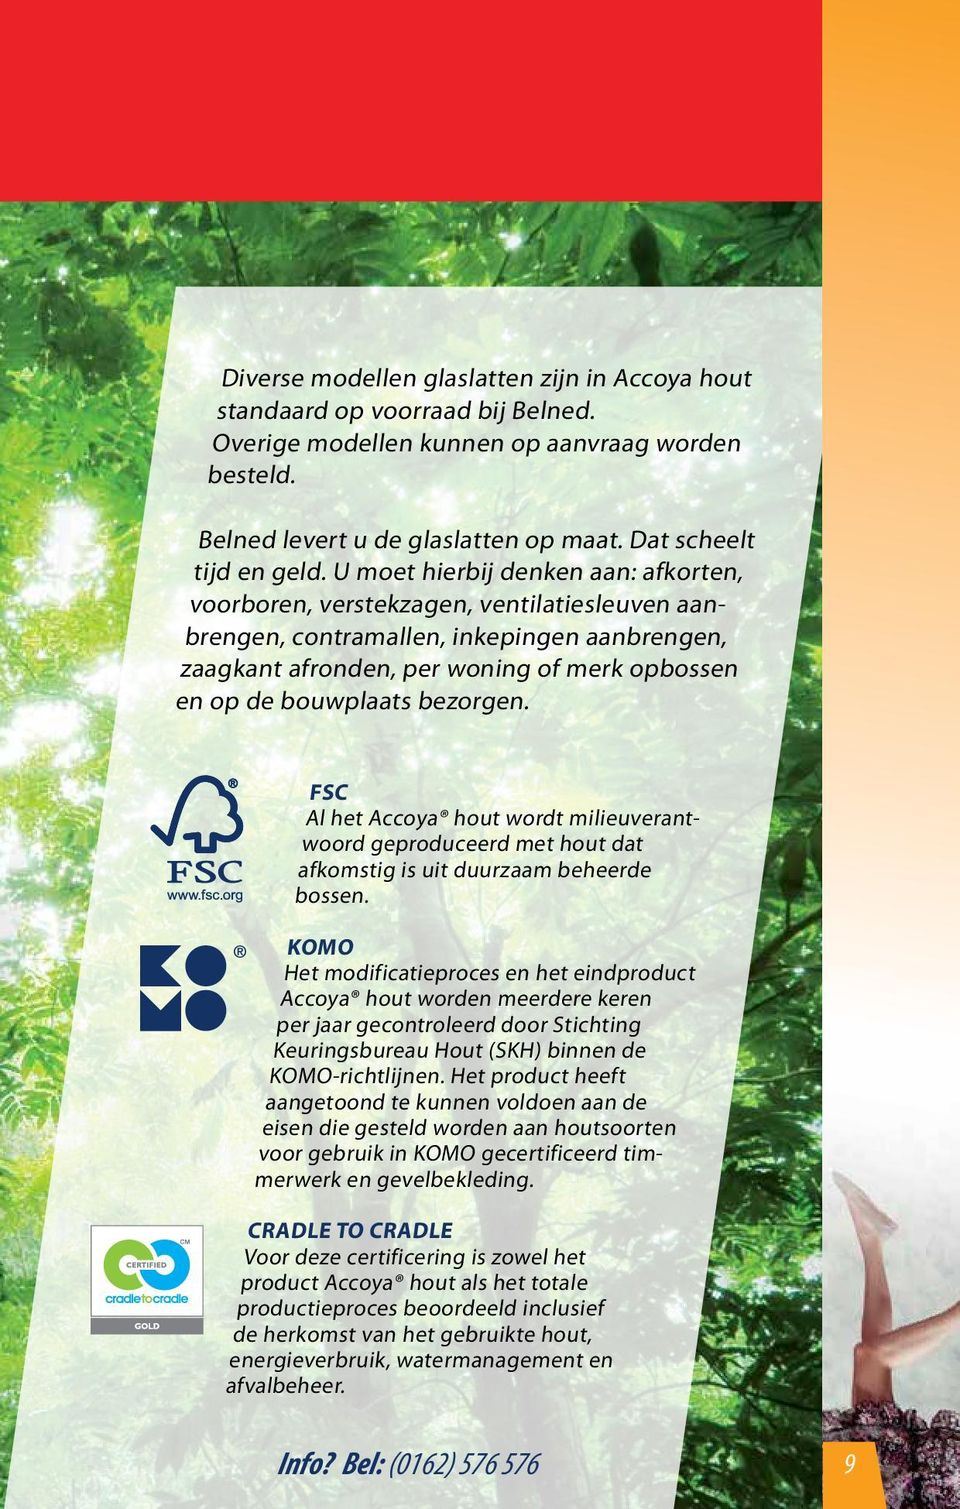 bezorgen. FSC Al het Accoya hout wordt milieuverantwoord geproduceerd met hout dat afkomstig is uit duurzaam beheerde bossen.